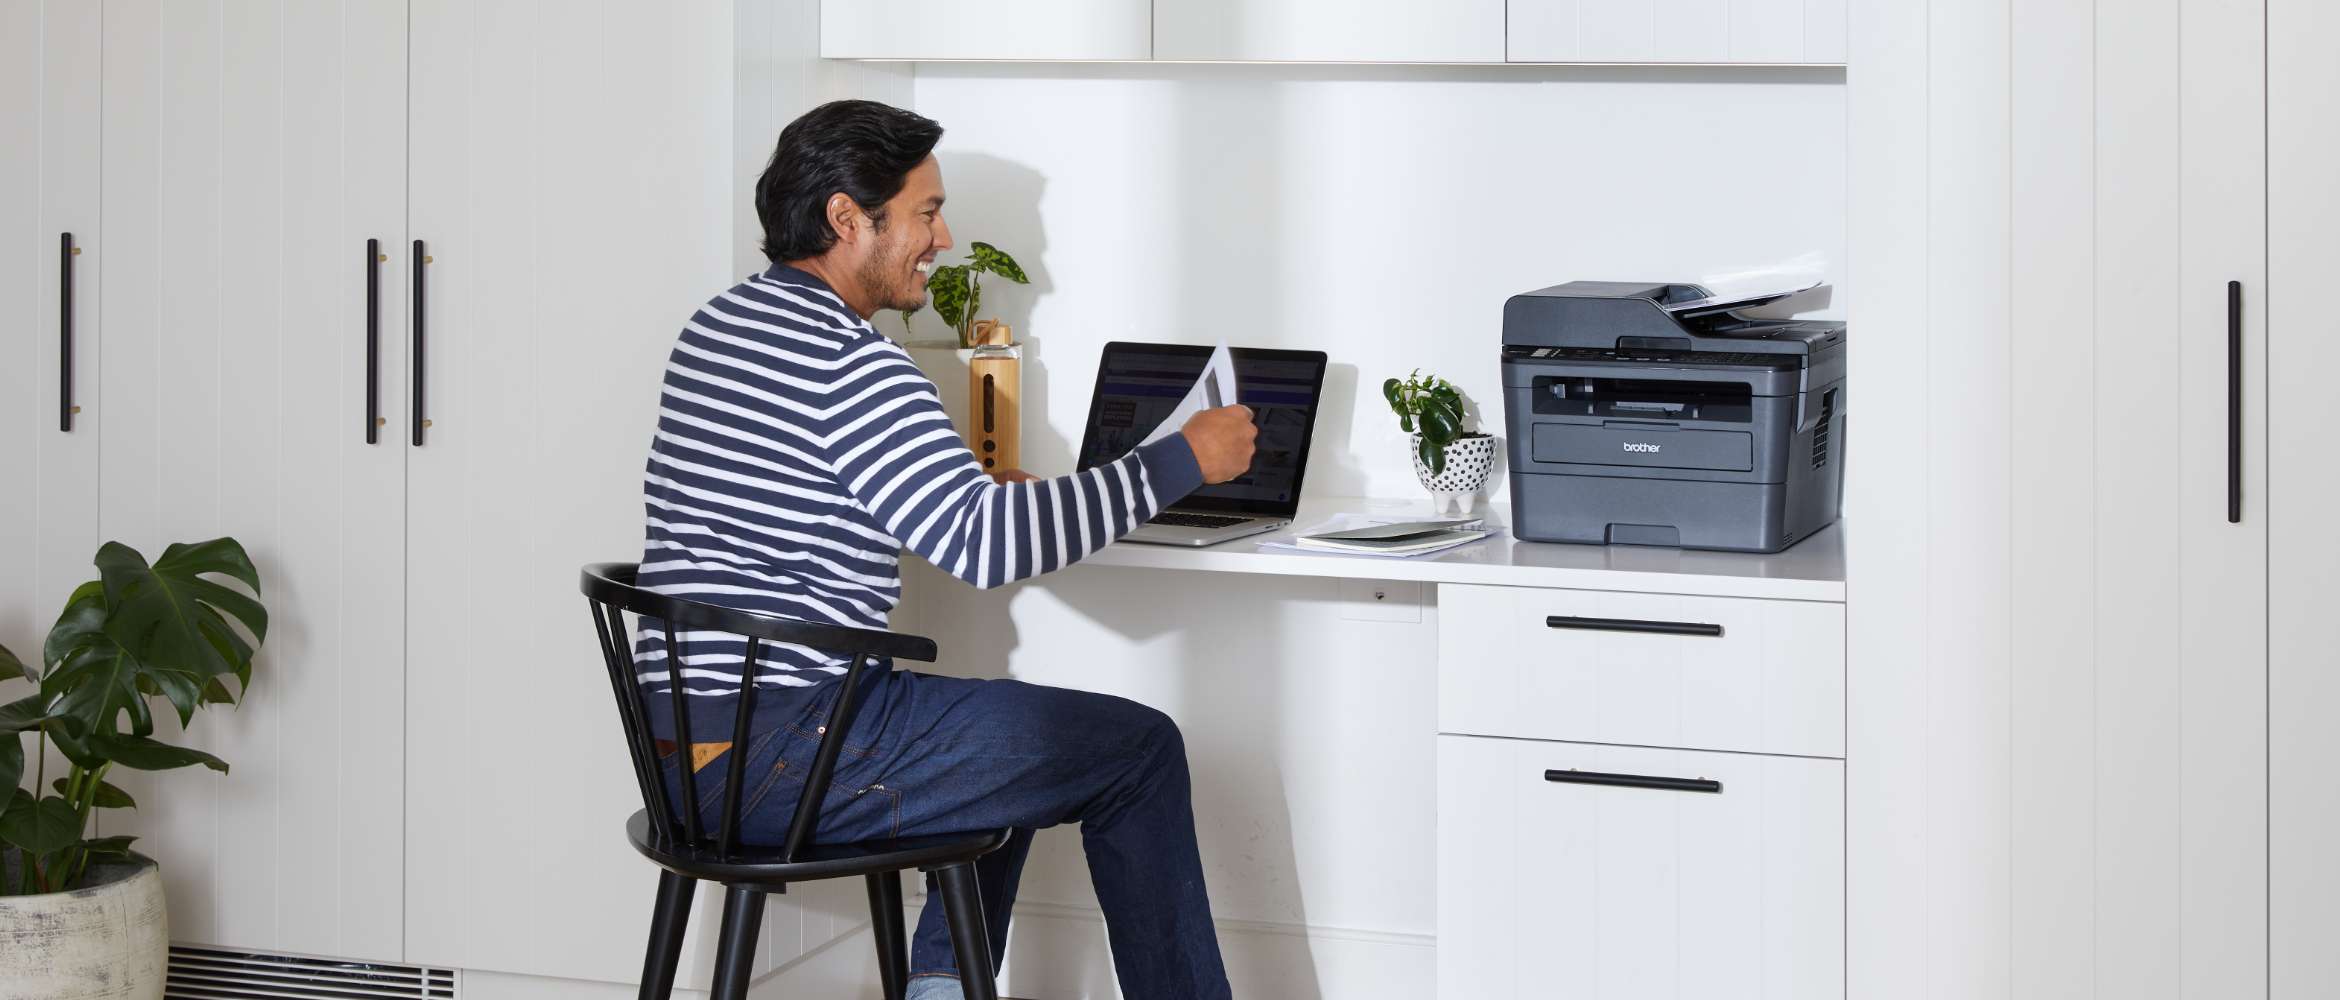 Un homme est assis dans son bureau hybride où il travaille à distance depuis son domicile. Il examine un document imprimé à partir d'une imprimante Brother.